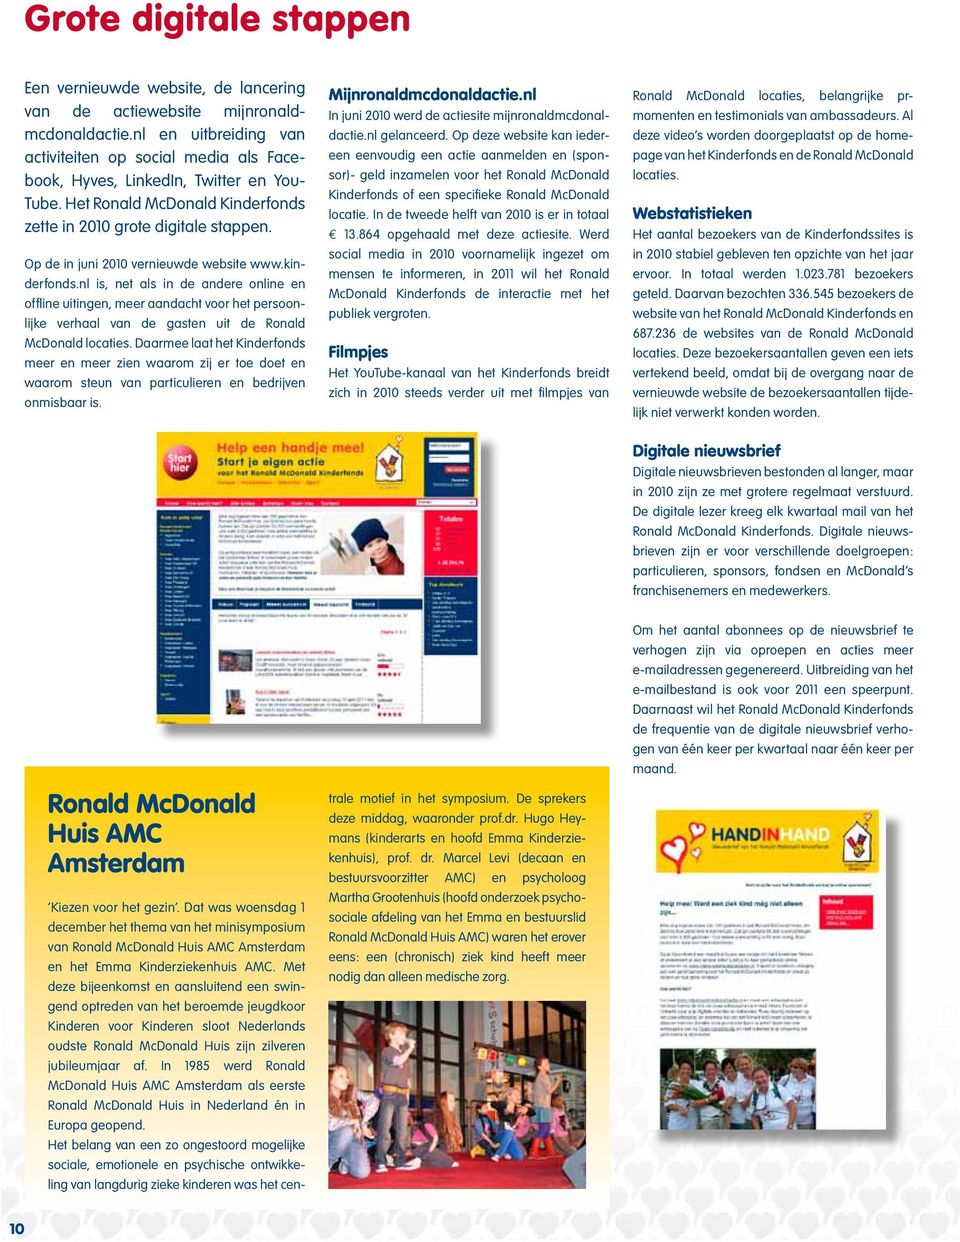 Op de in juni vernieuwde website www.kinderfonds.nl is, net als in de andere online en offline uitingen, meer aandacht voor het persoonlijke verhaal van de gasten uit de Ronald McDonald locaties.